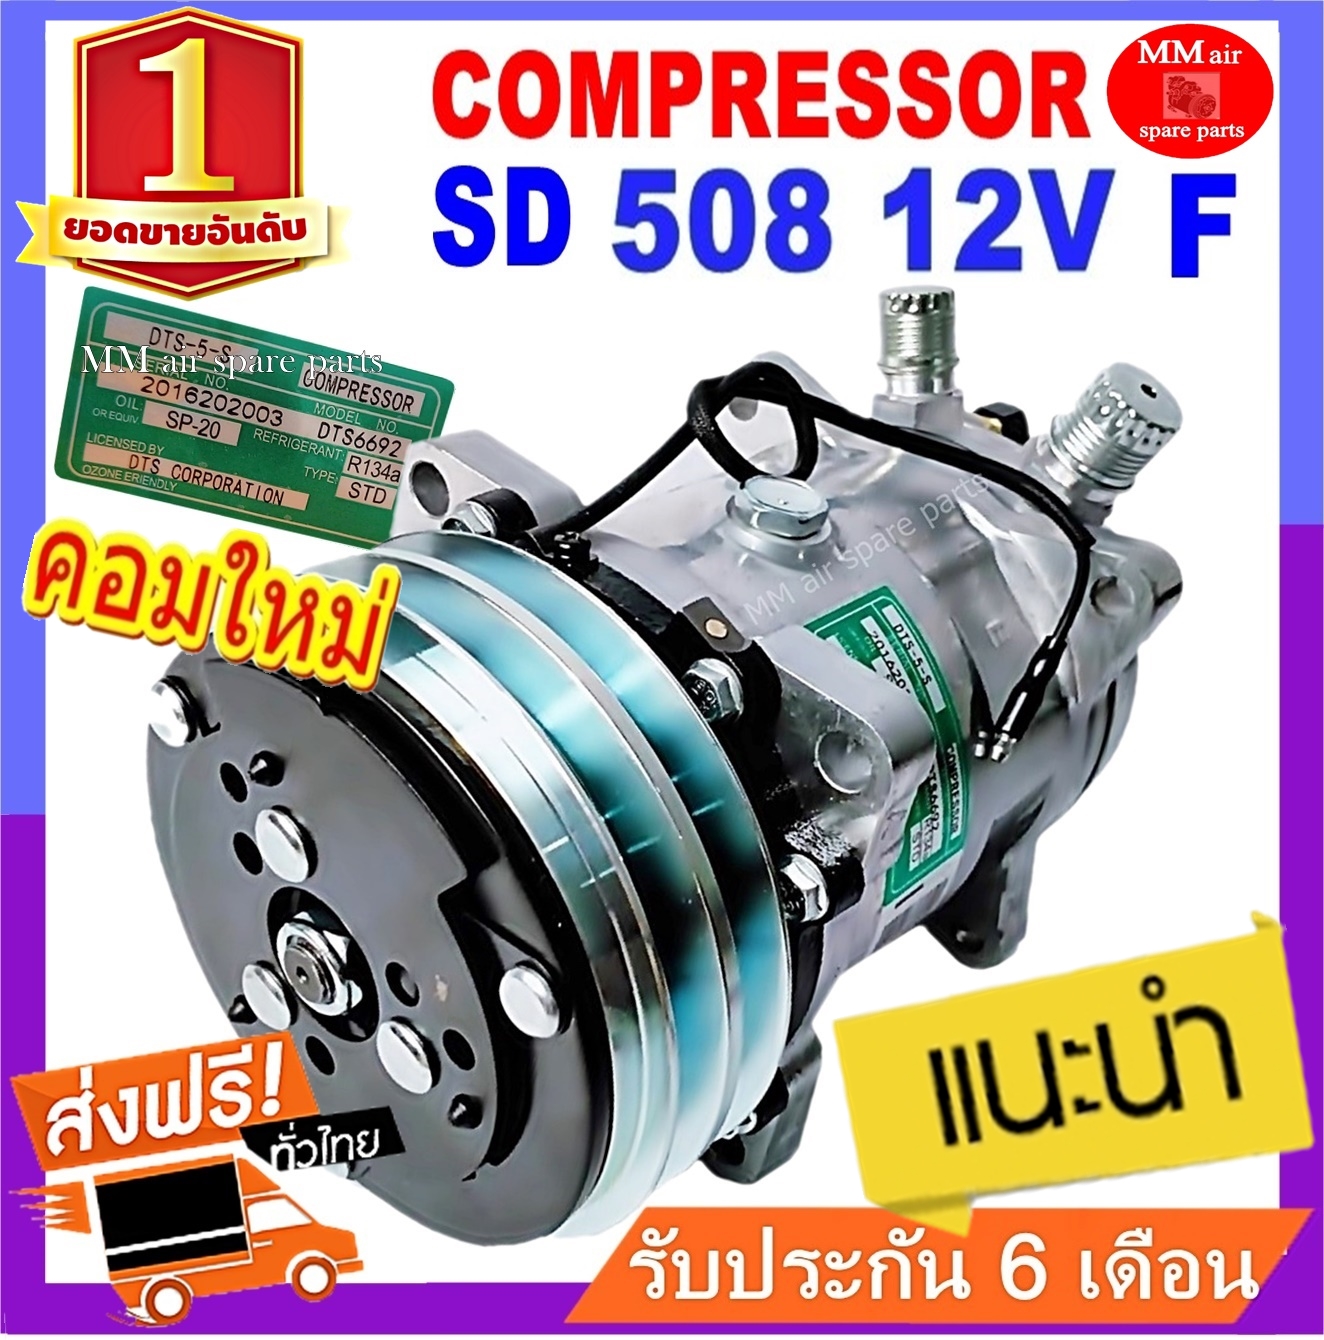 ของใหม่100% คอมแอร์ ซันเด้น 508 12V. หัวแฟร์ เตเปอร์ ,.SD 508 (ใช้ได้ทั้งน้ำยา R12 และ R134a) : Compressor SD 508 12V R12 Flare.